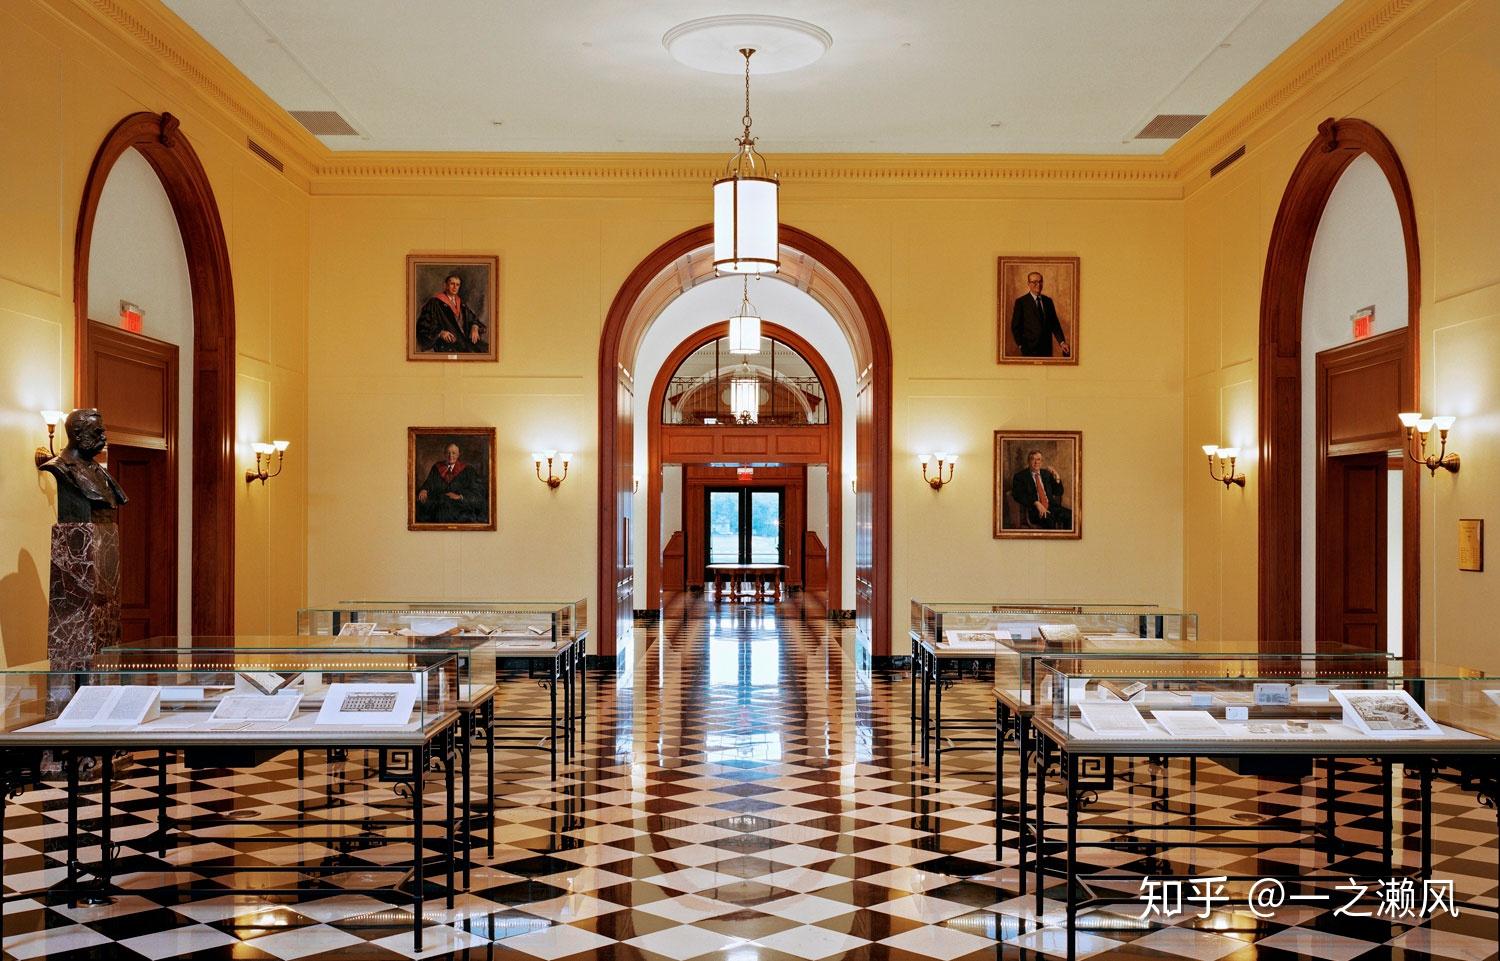 哈佛大学图书馆 壁纸图片